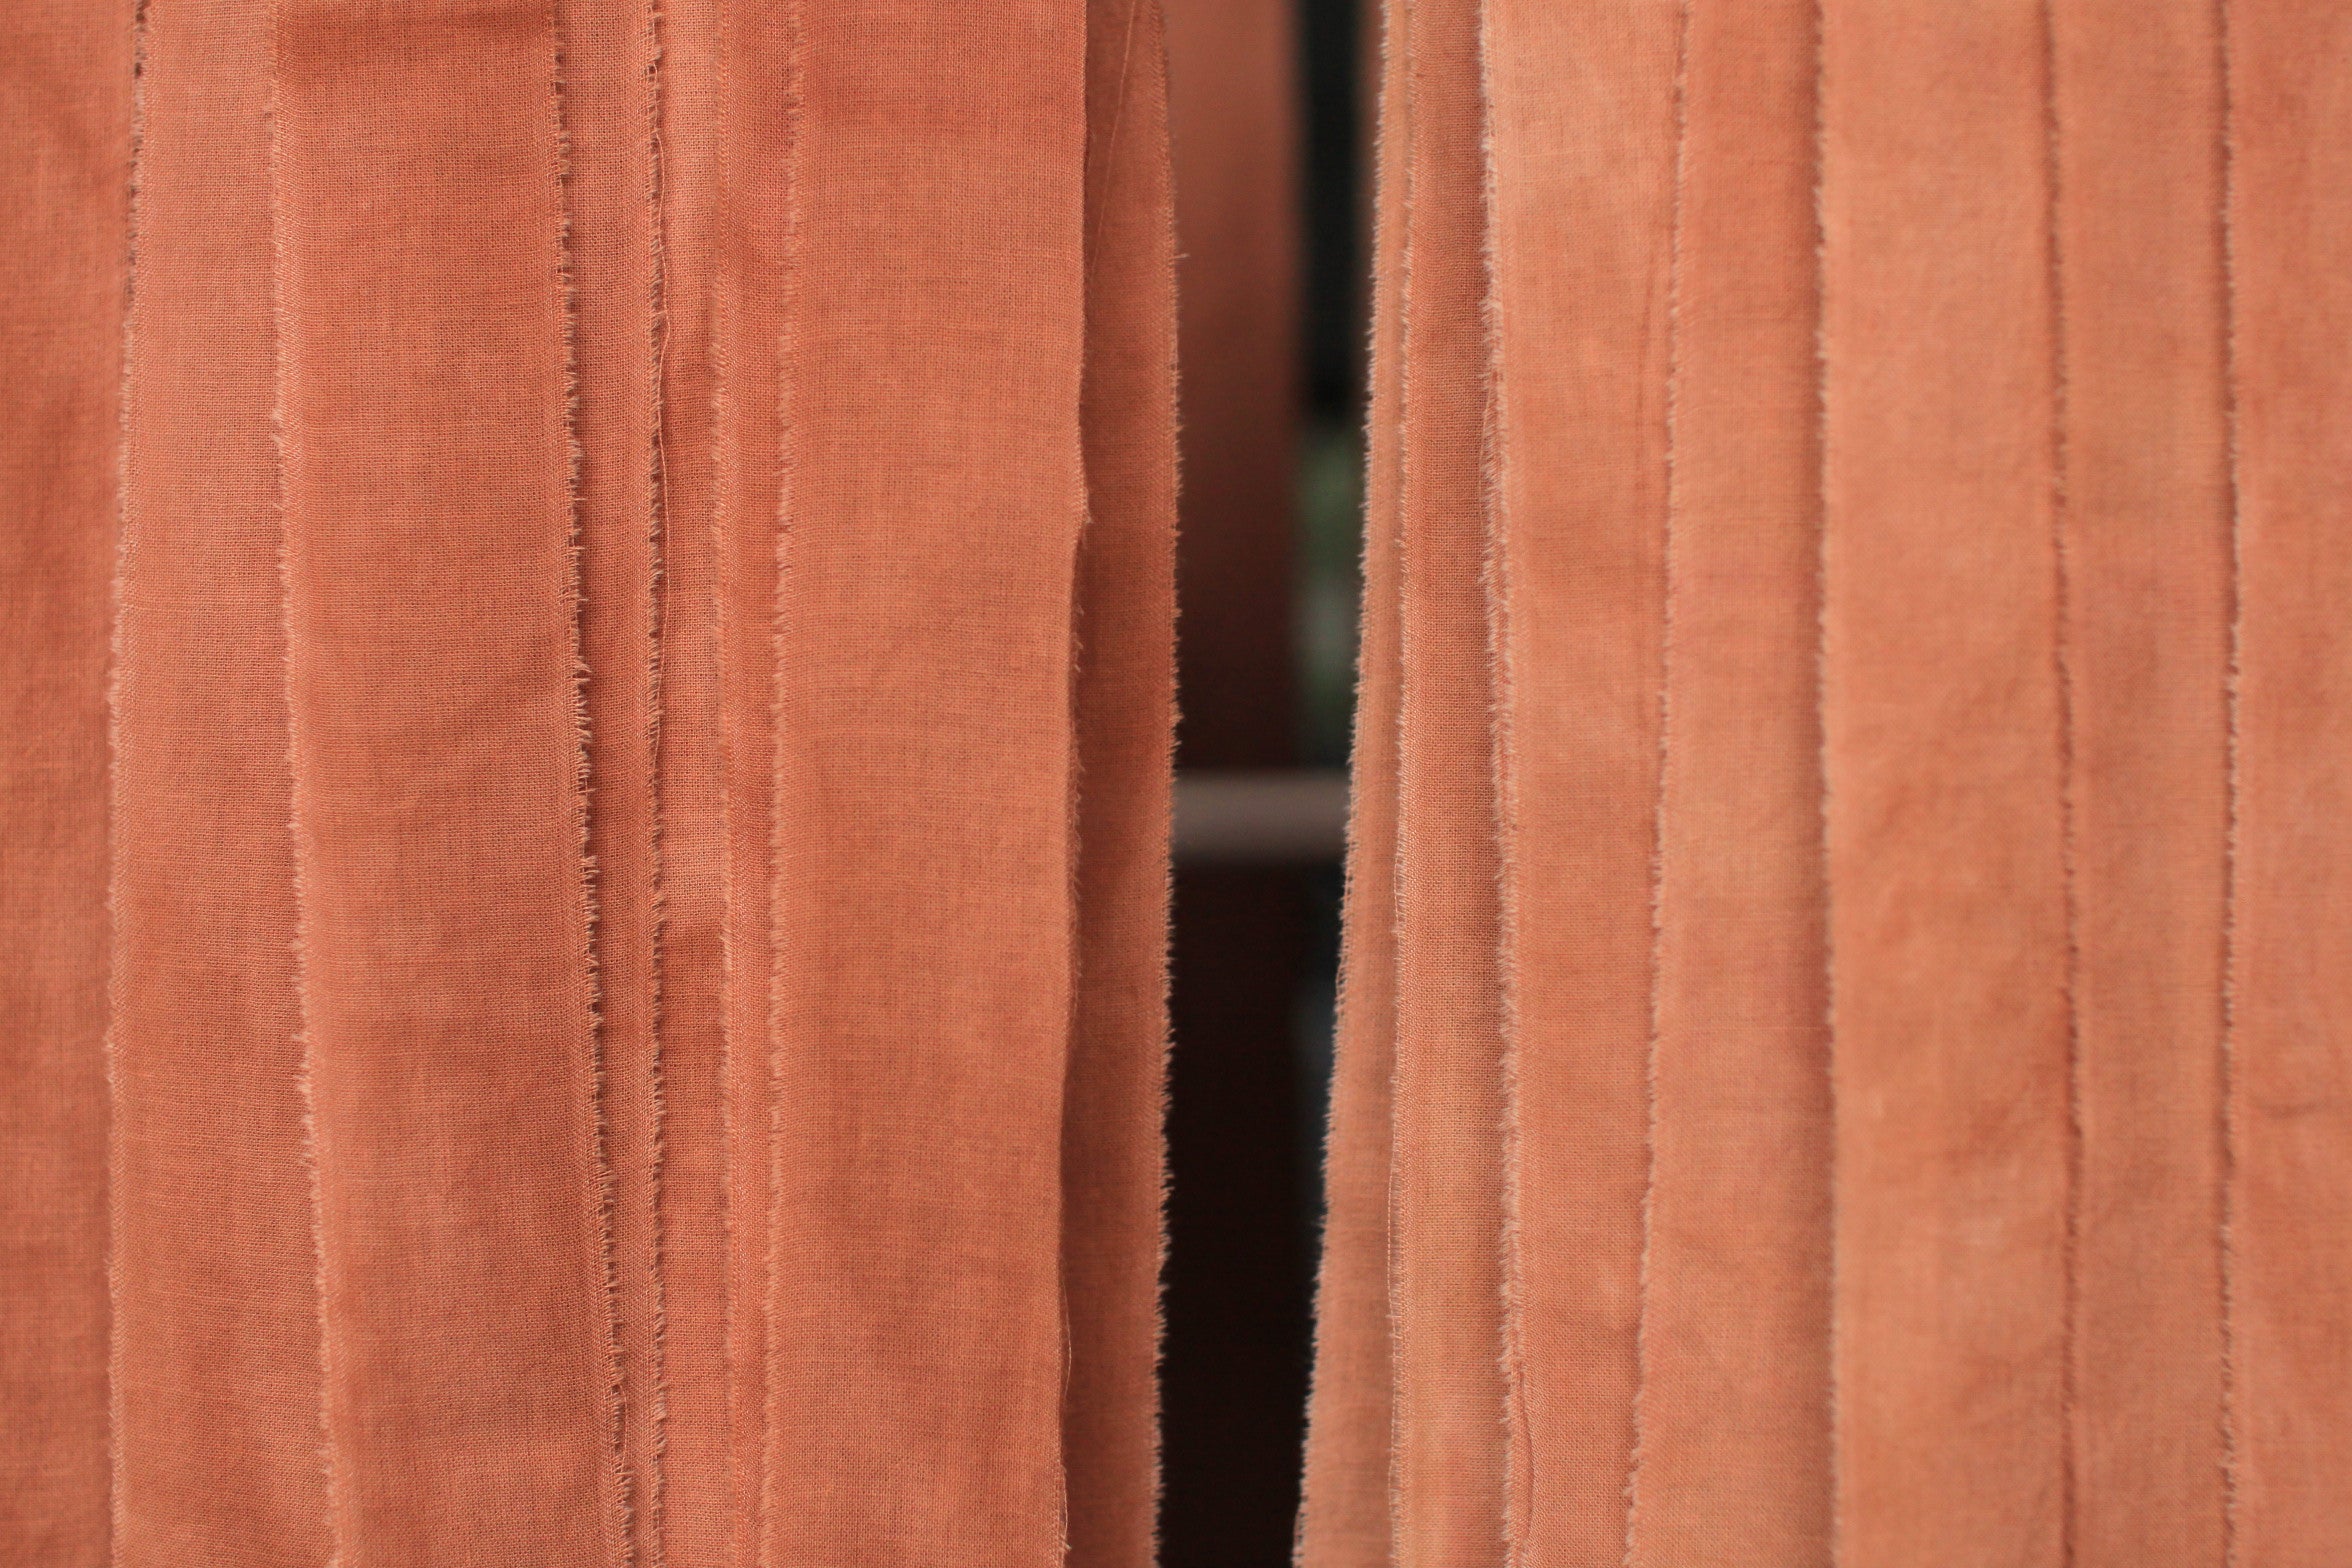 Ruban en popeline de coton - couleur "Nude/terra cotta" - largeur 5cm, longueur 2,5m